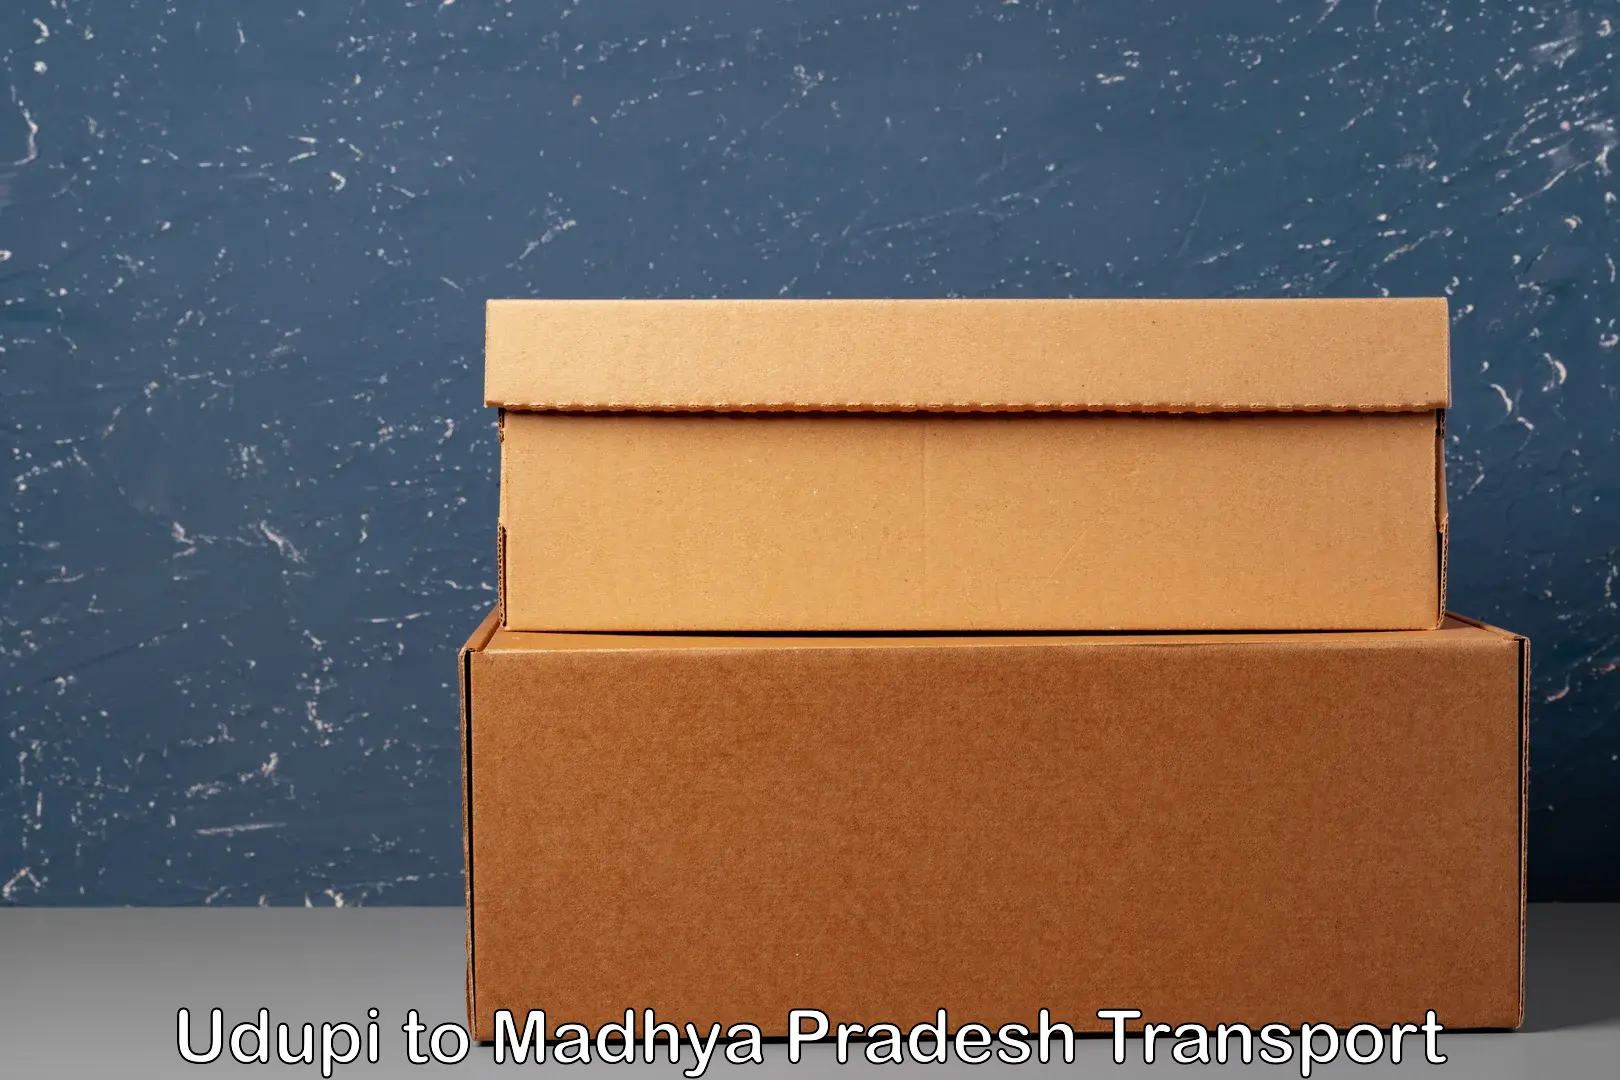 Cargo transportation services Udupi to Vidisha